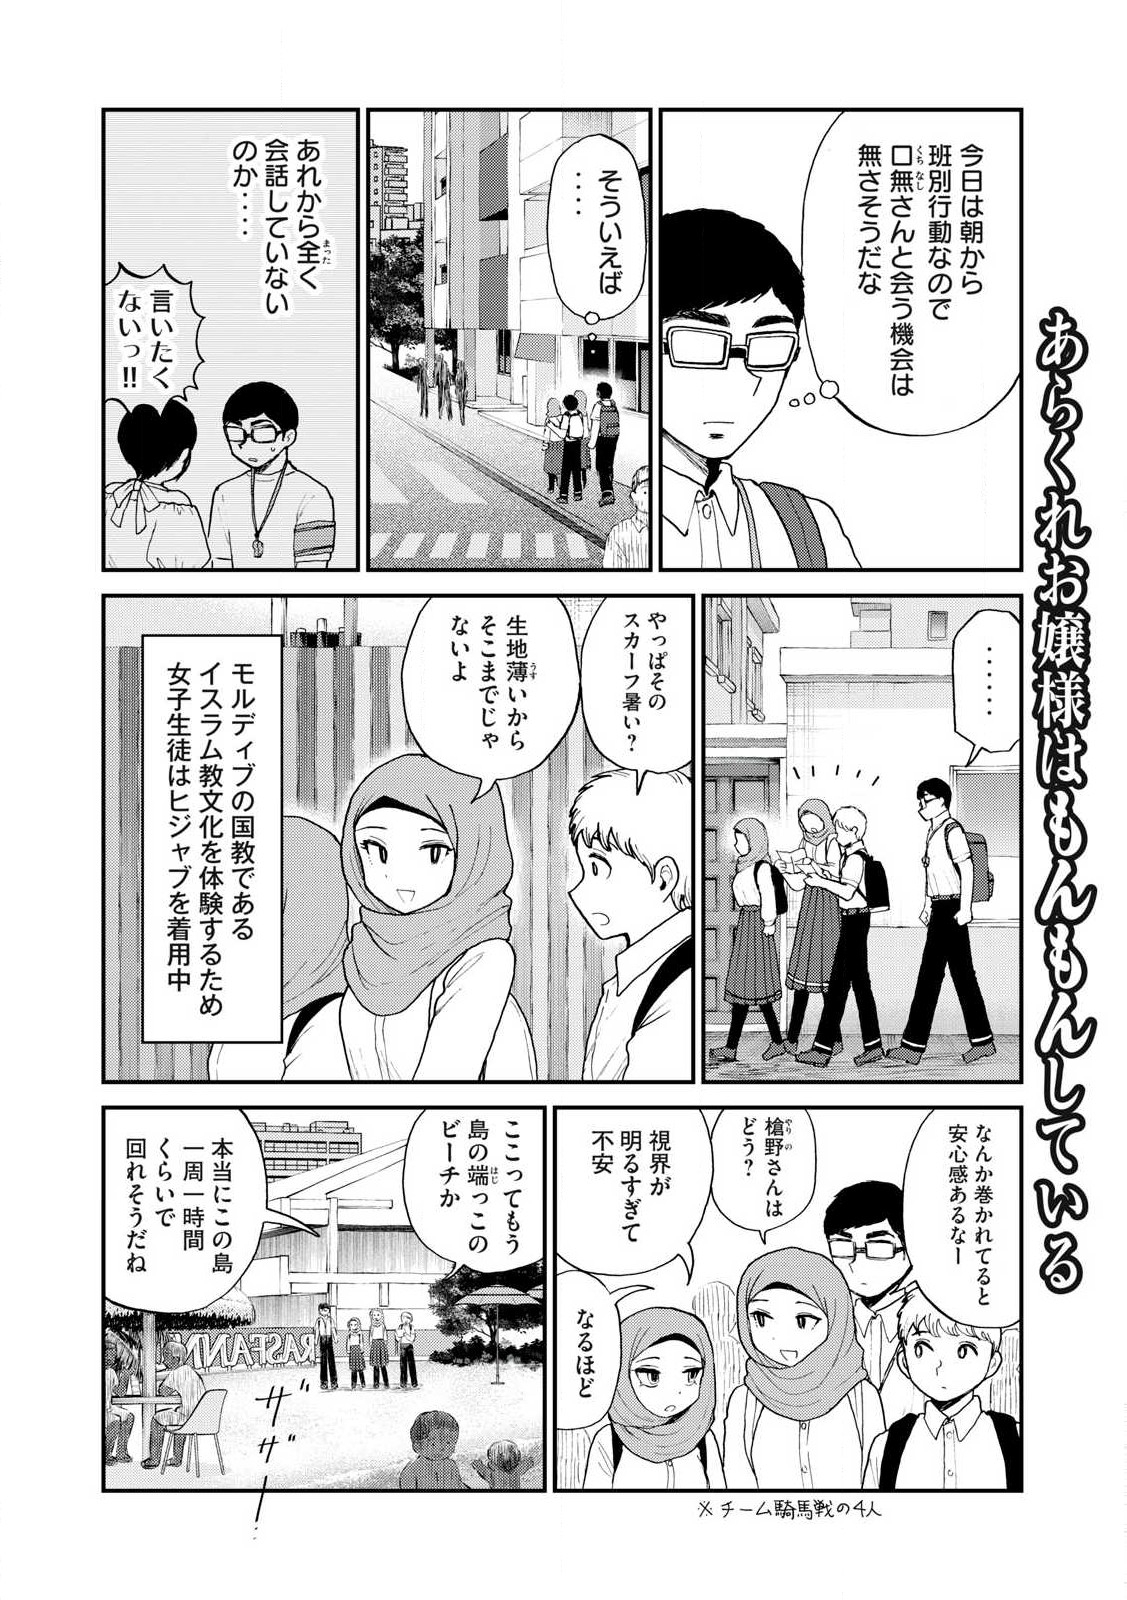 Arakure Ojousama Wa MonMon Shiteiru - Chapter 42.2 - Page 2